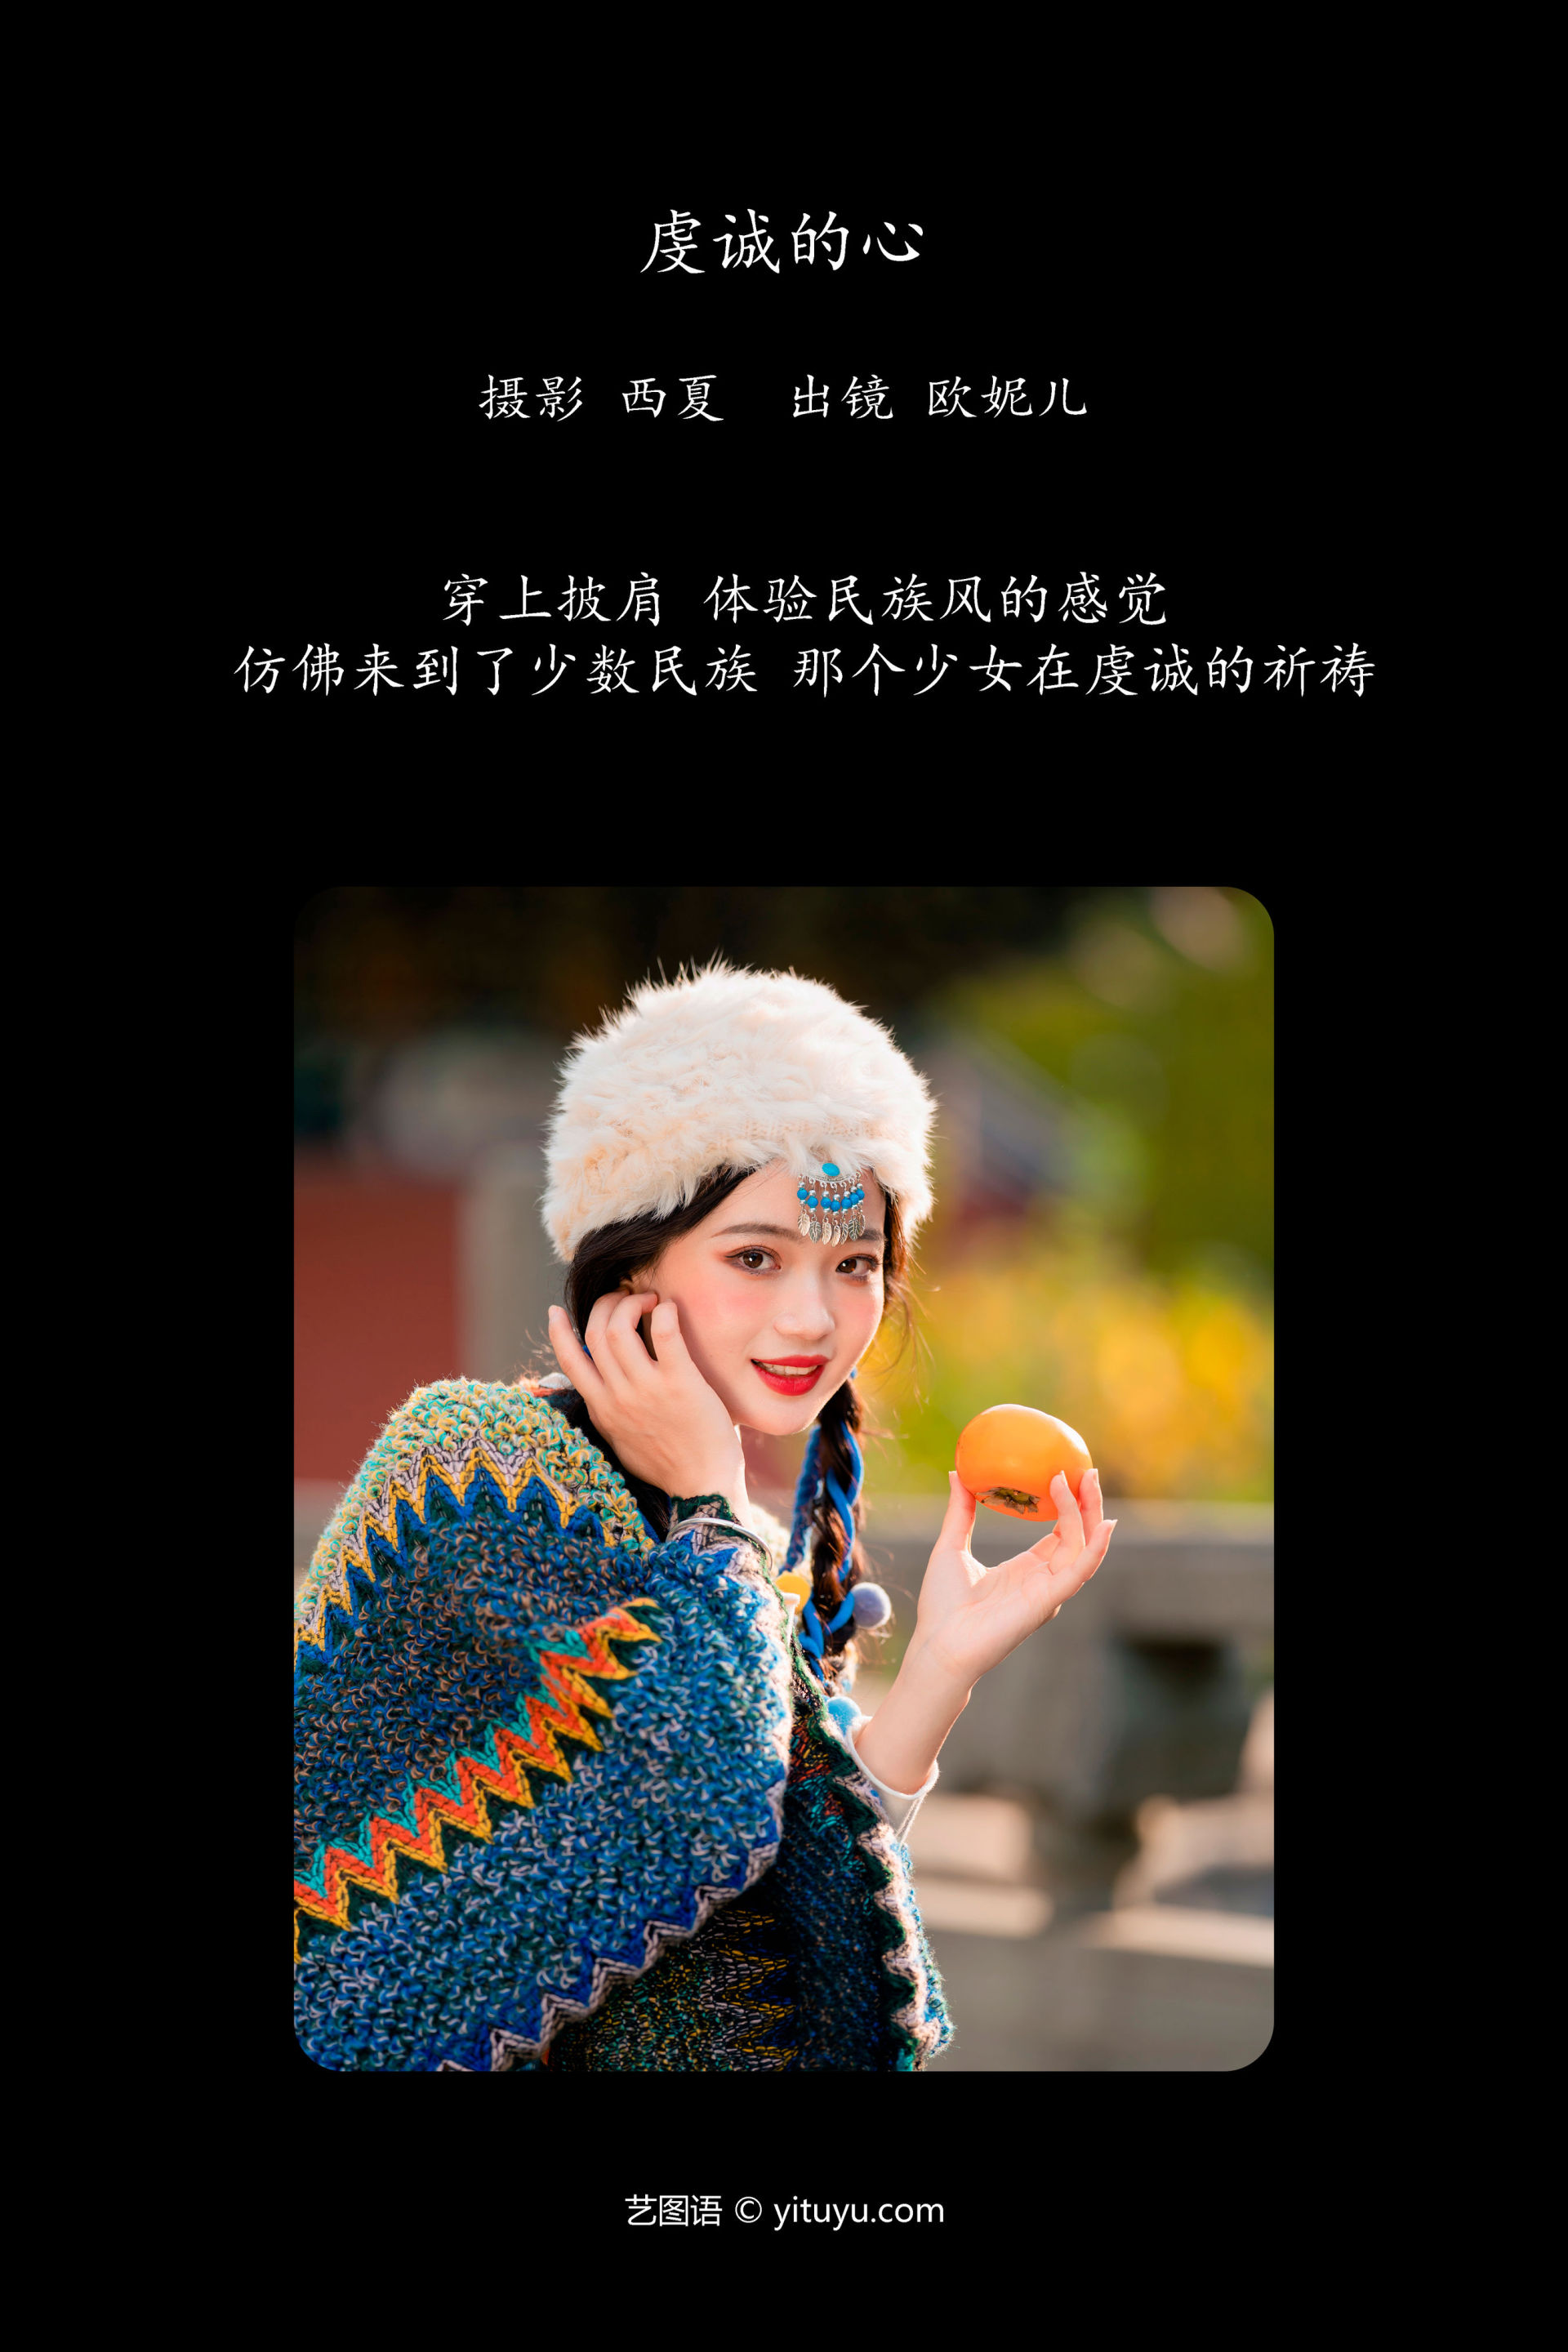 虔诚的心 小姐姐 写真 民族风 藏族 姑娘